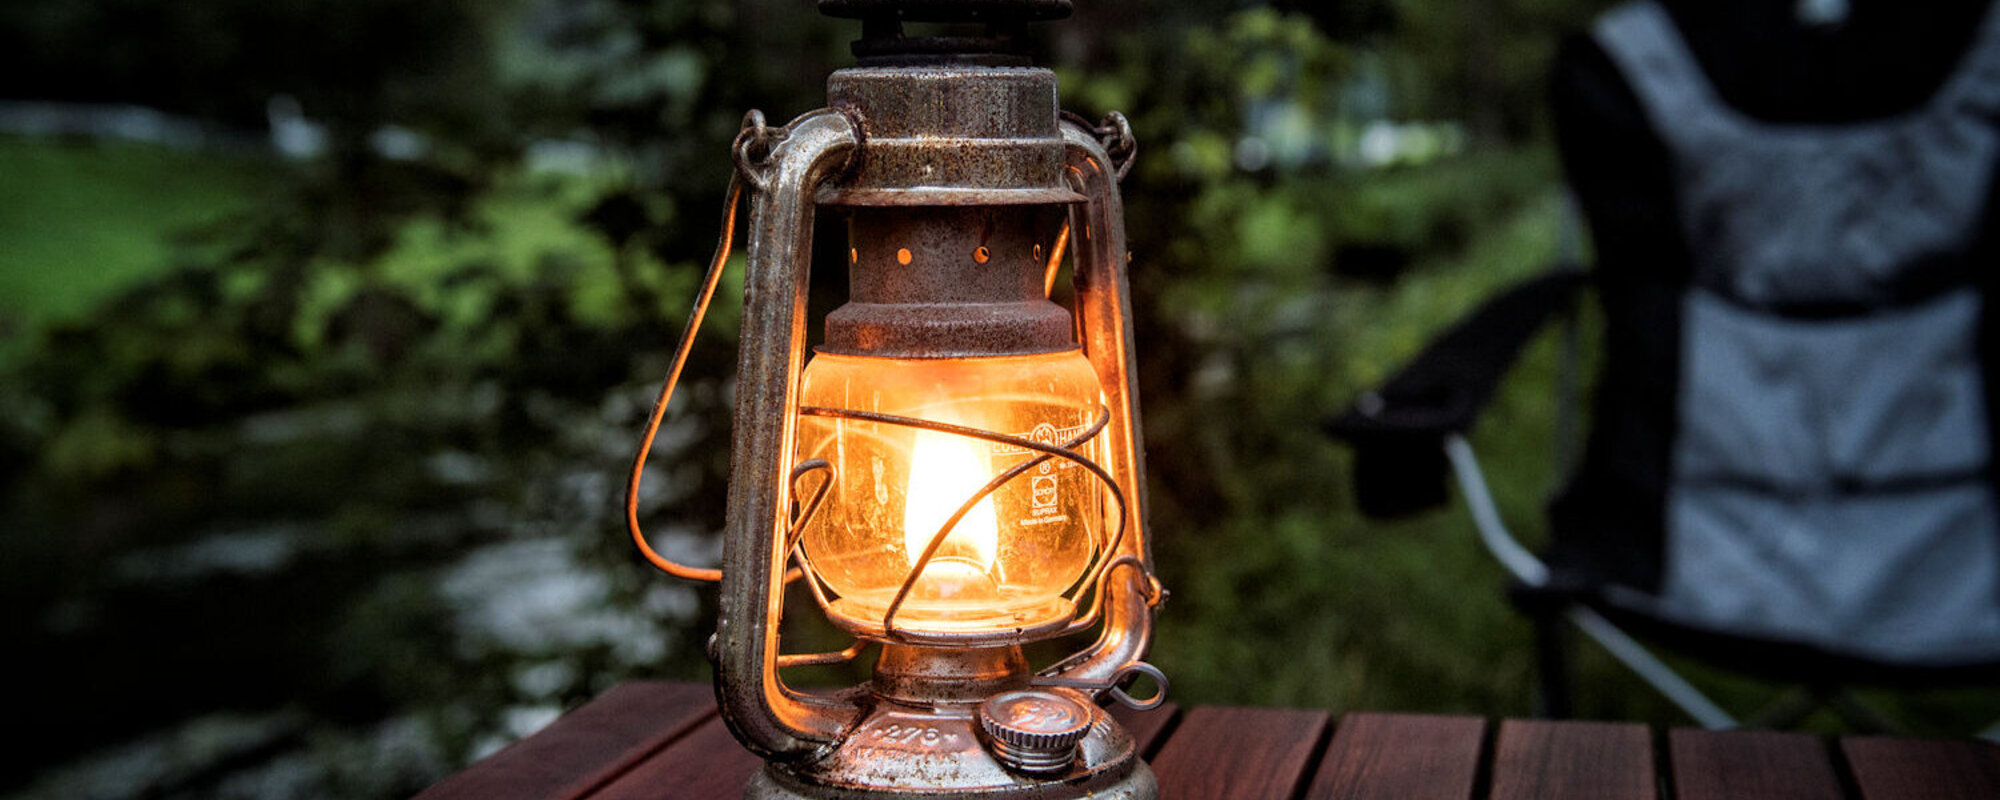 Eine brennende Öllampe steht auf einem hölzernen Campingtisch.